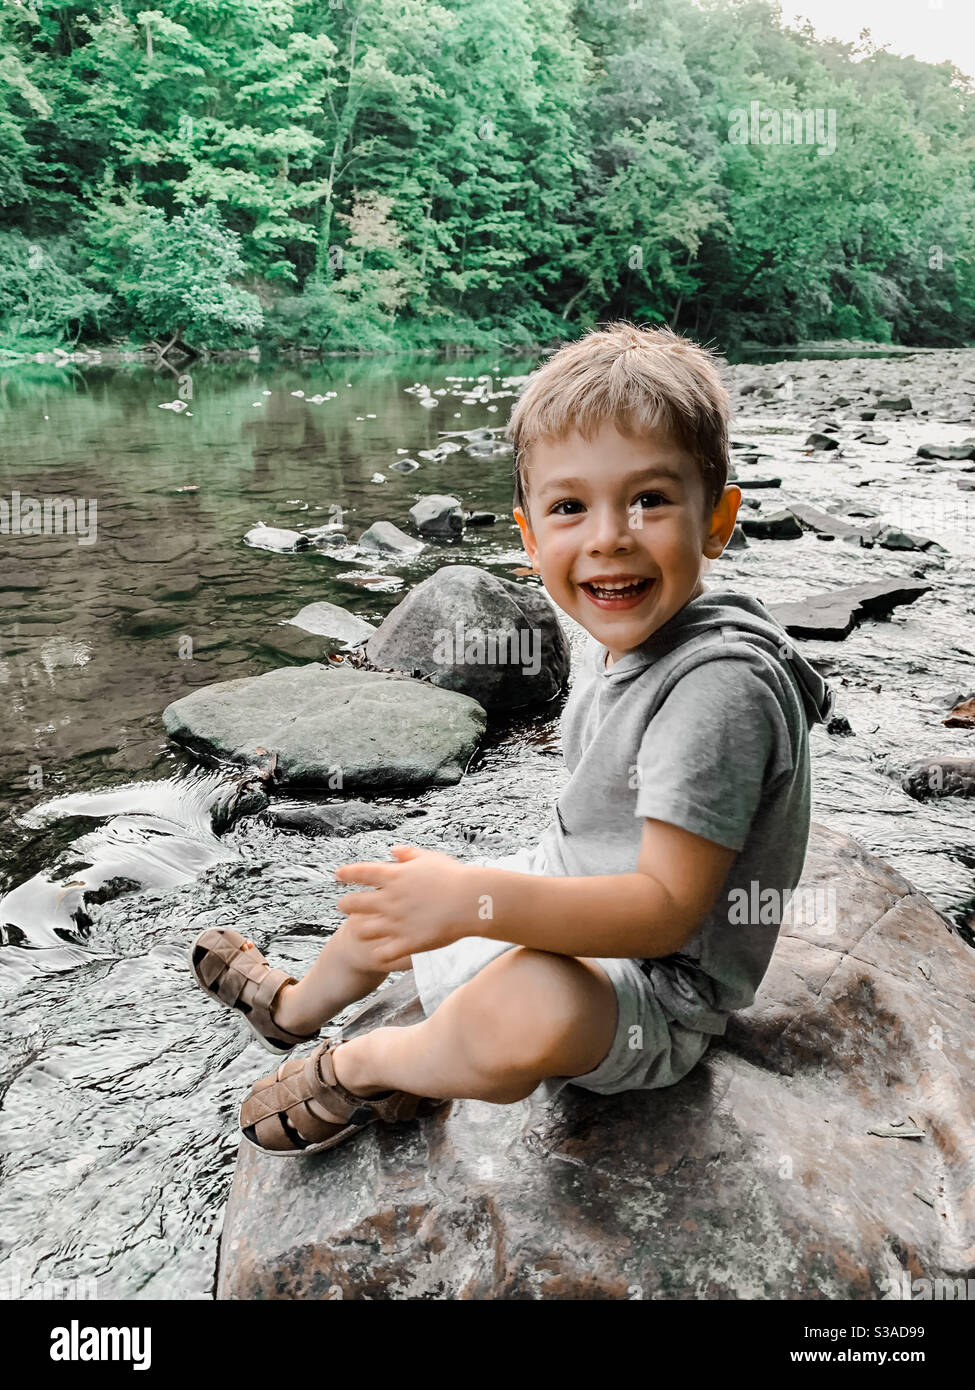 Junge lächelt, während er auf dem Flussbett sitzt Stockfoto